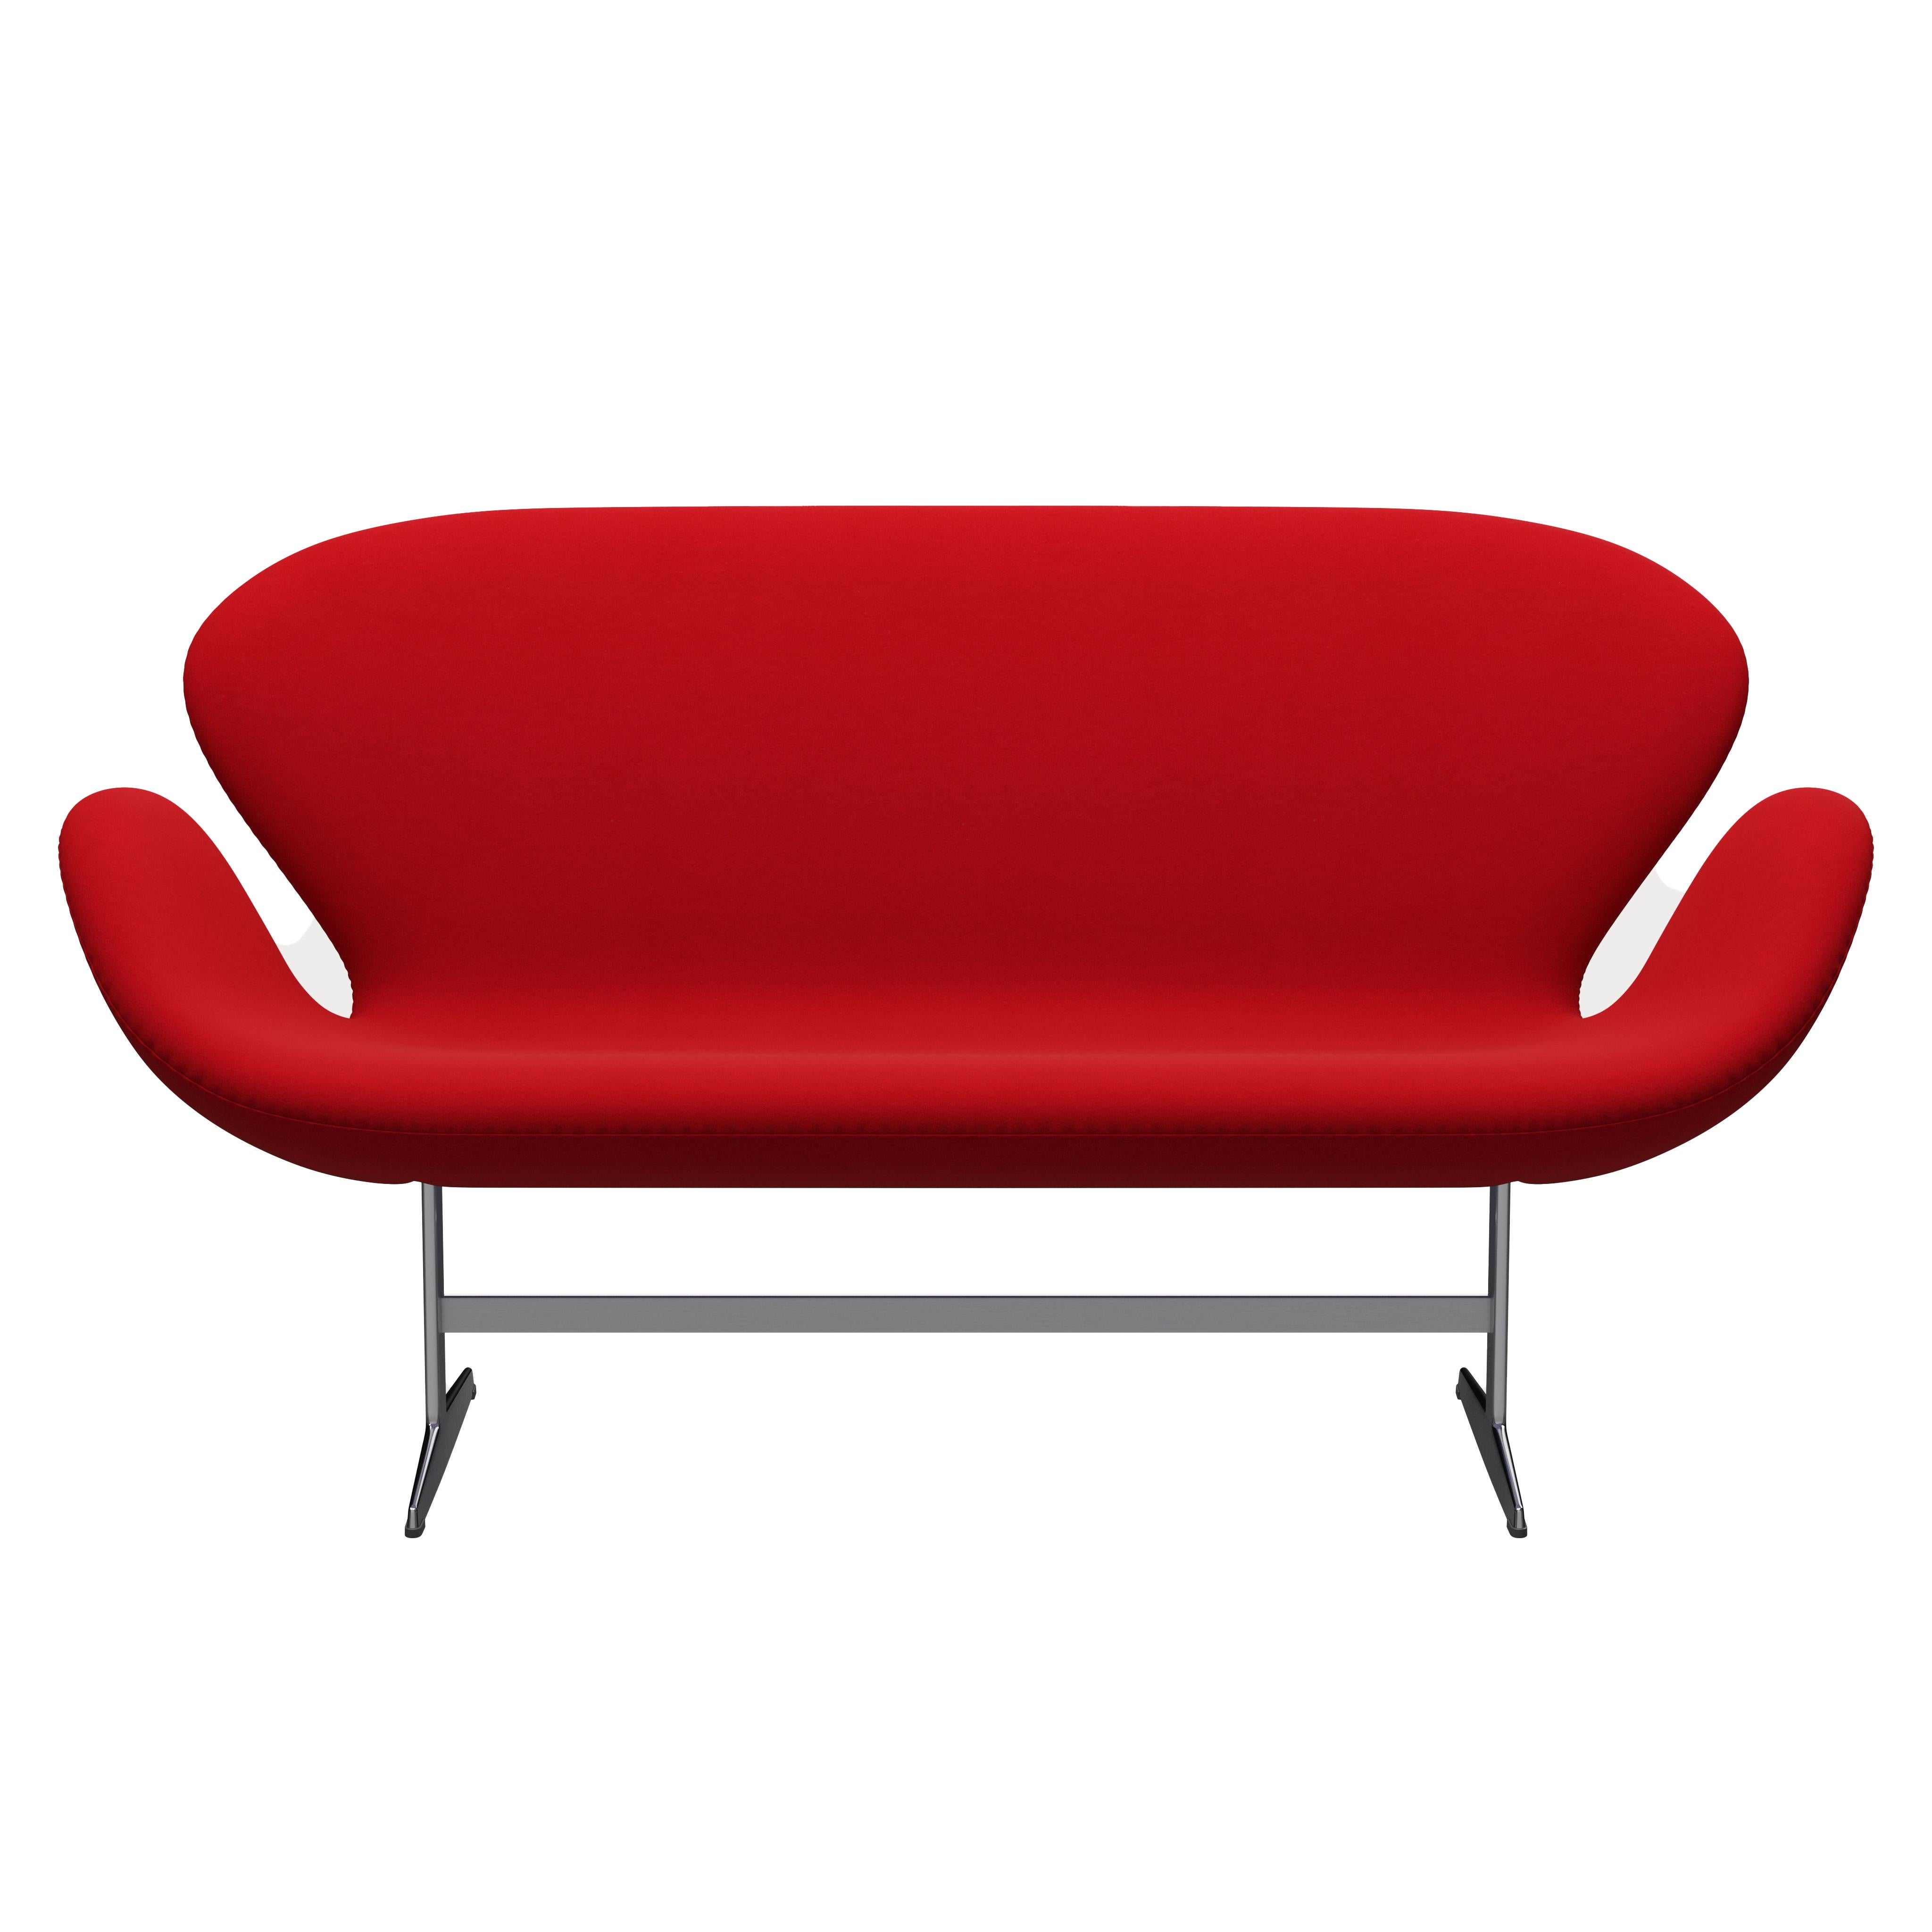 Arne Jacobsen 'Swan' Sofa for Fritz Hansen in Fabric Upholstery (Cat. 3) For Sale 7